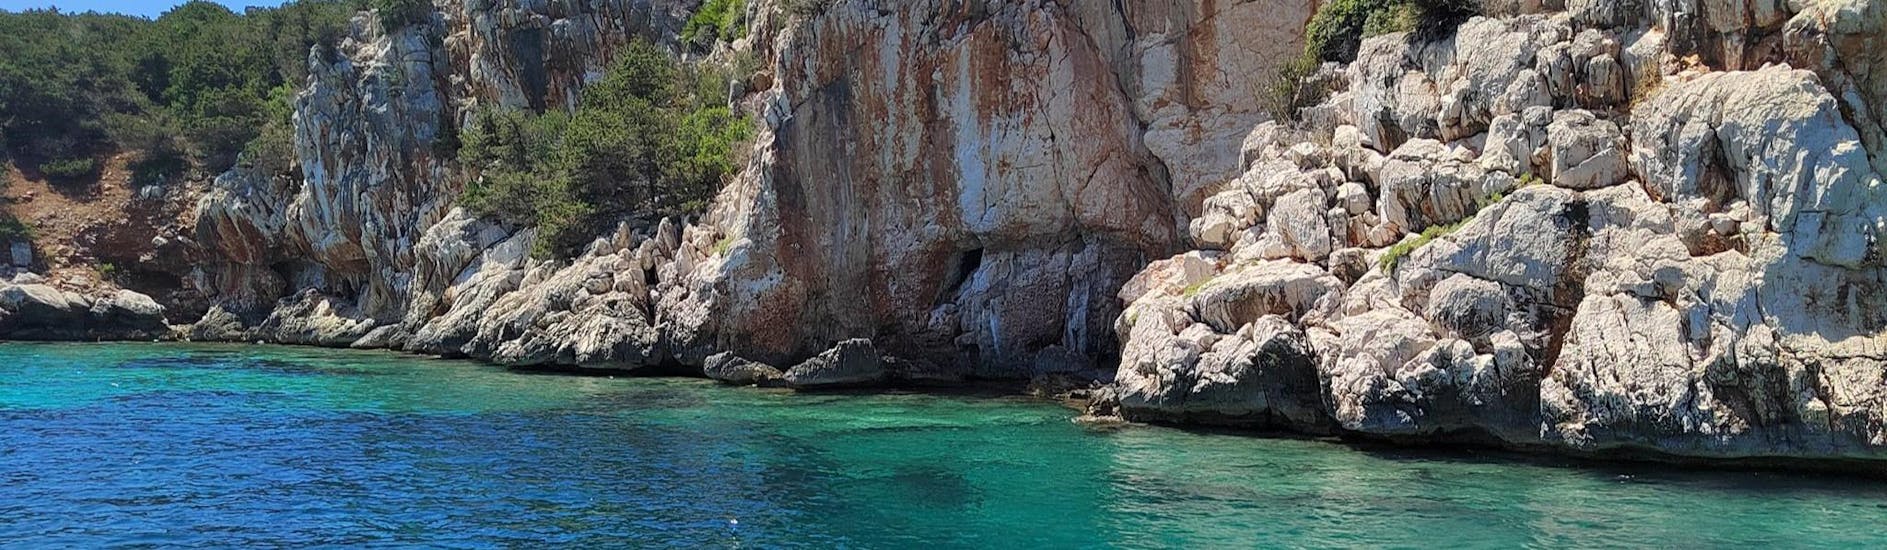 La scogliera a picco sul mare vista durante una gita con Alghero Escursioni in Barca.